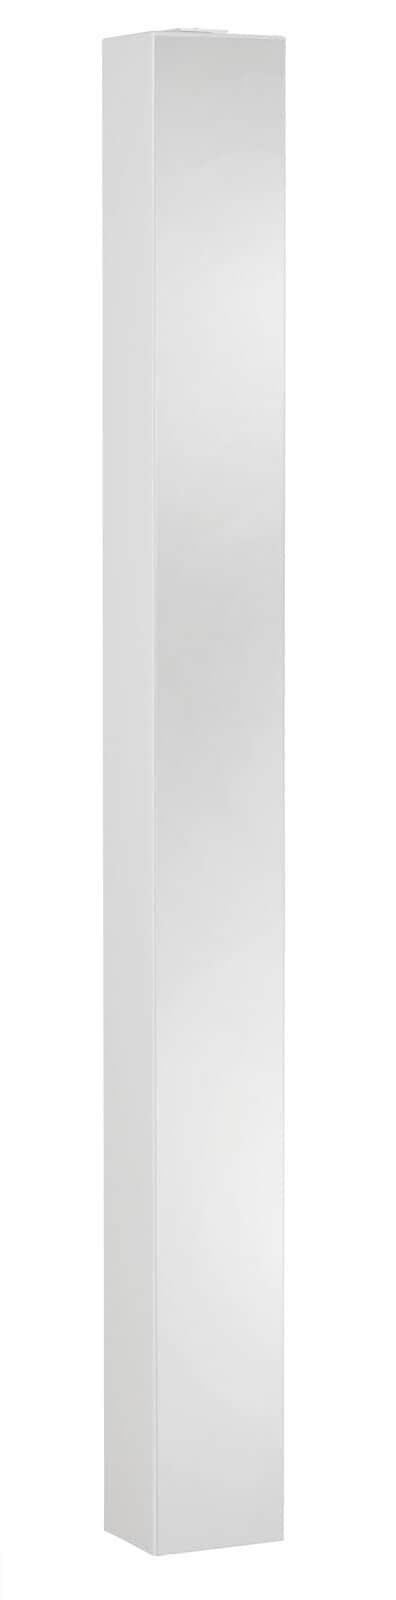 Mehrzweckschrank TURN 14 x 158 cm Weiß/ Spiegel